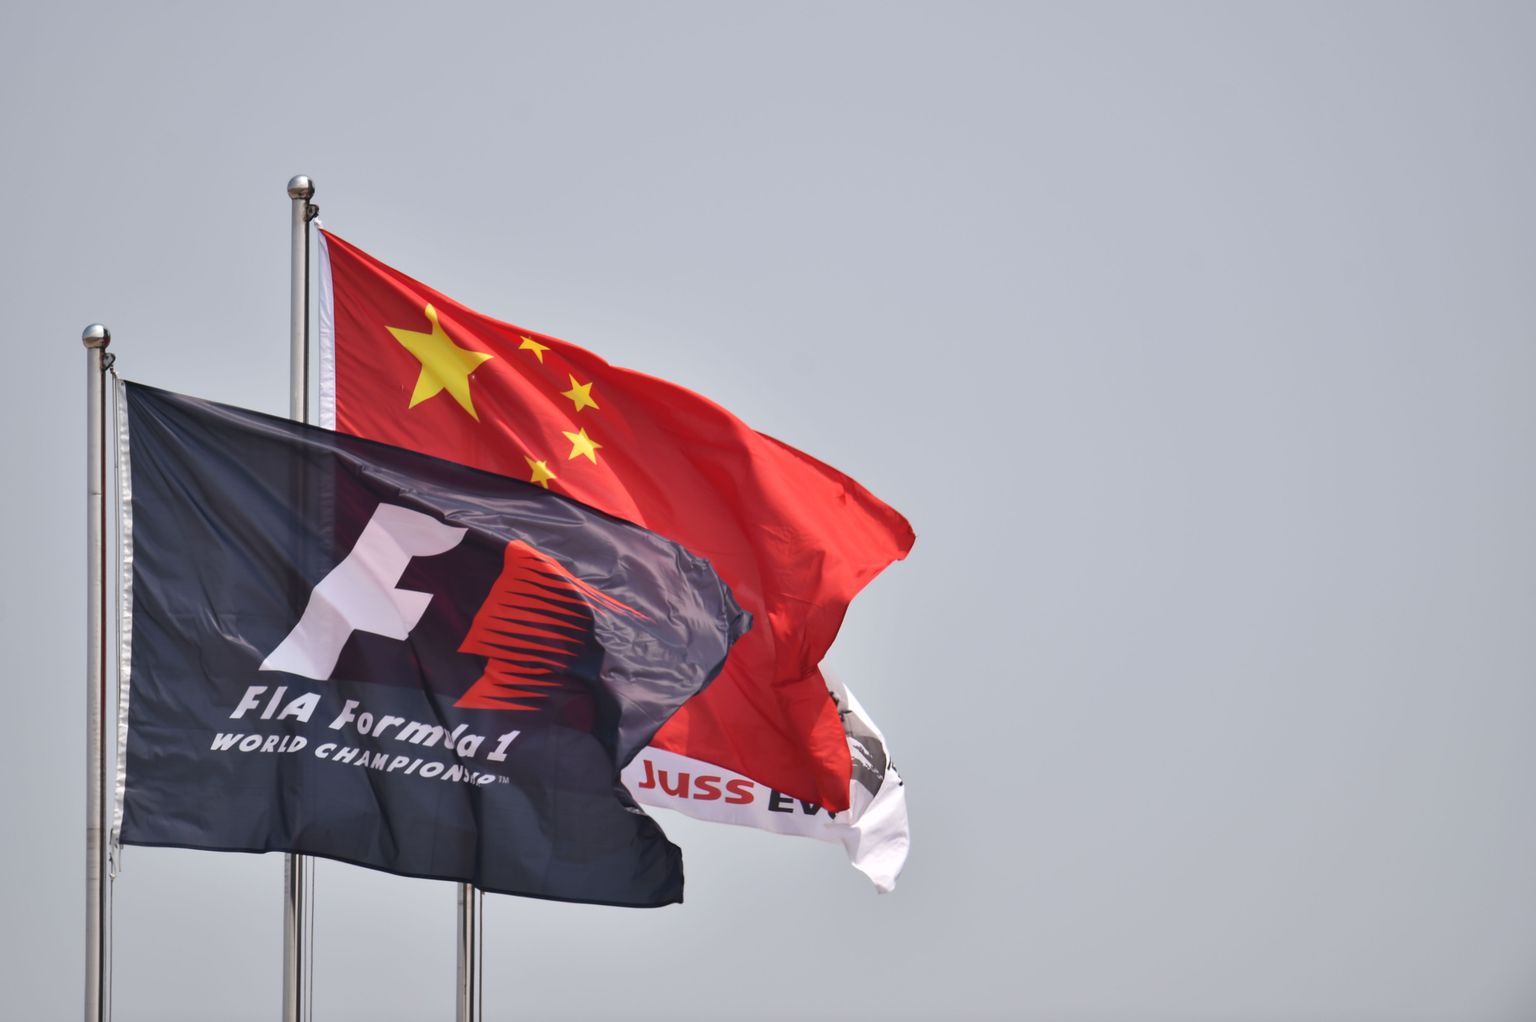 Vormel-1 Hiina etapp toimus esimest korda 2004. aastal.